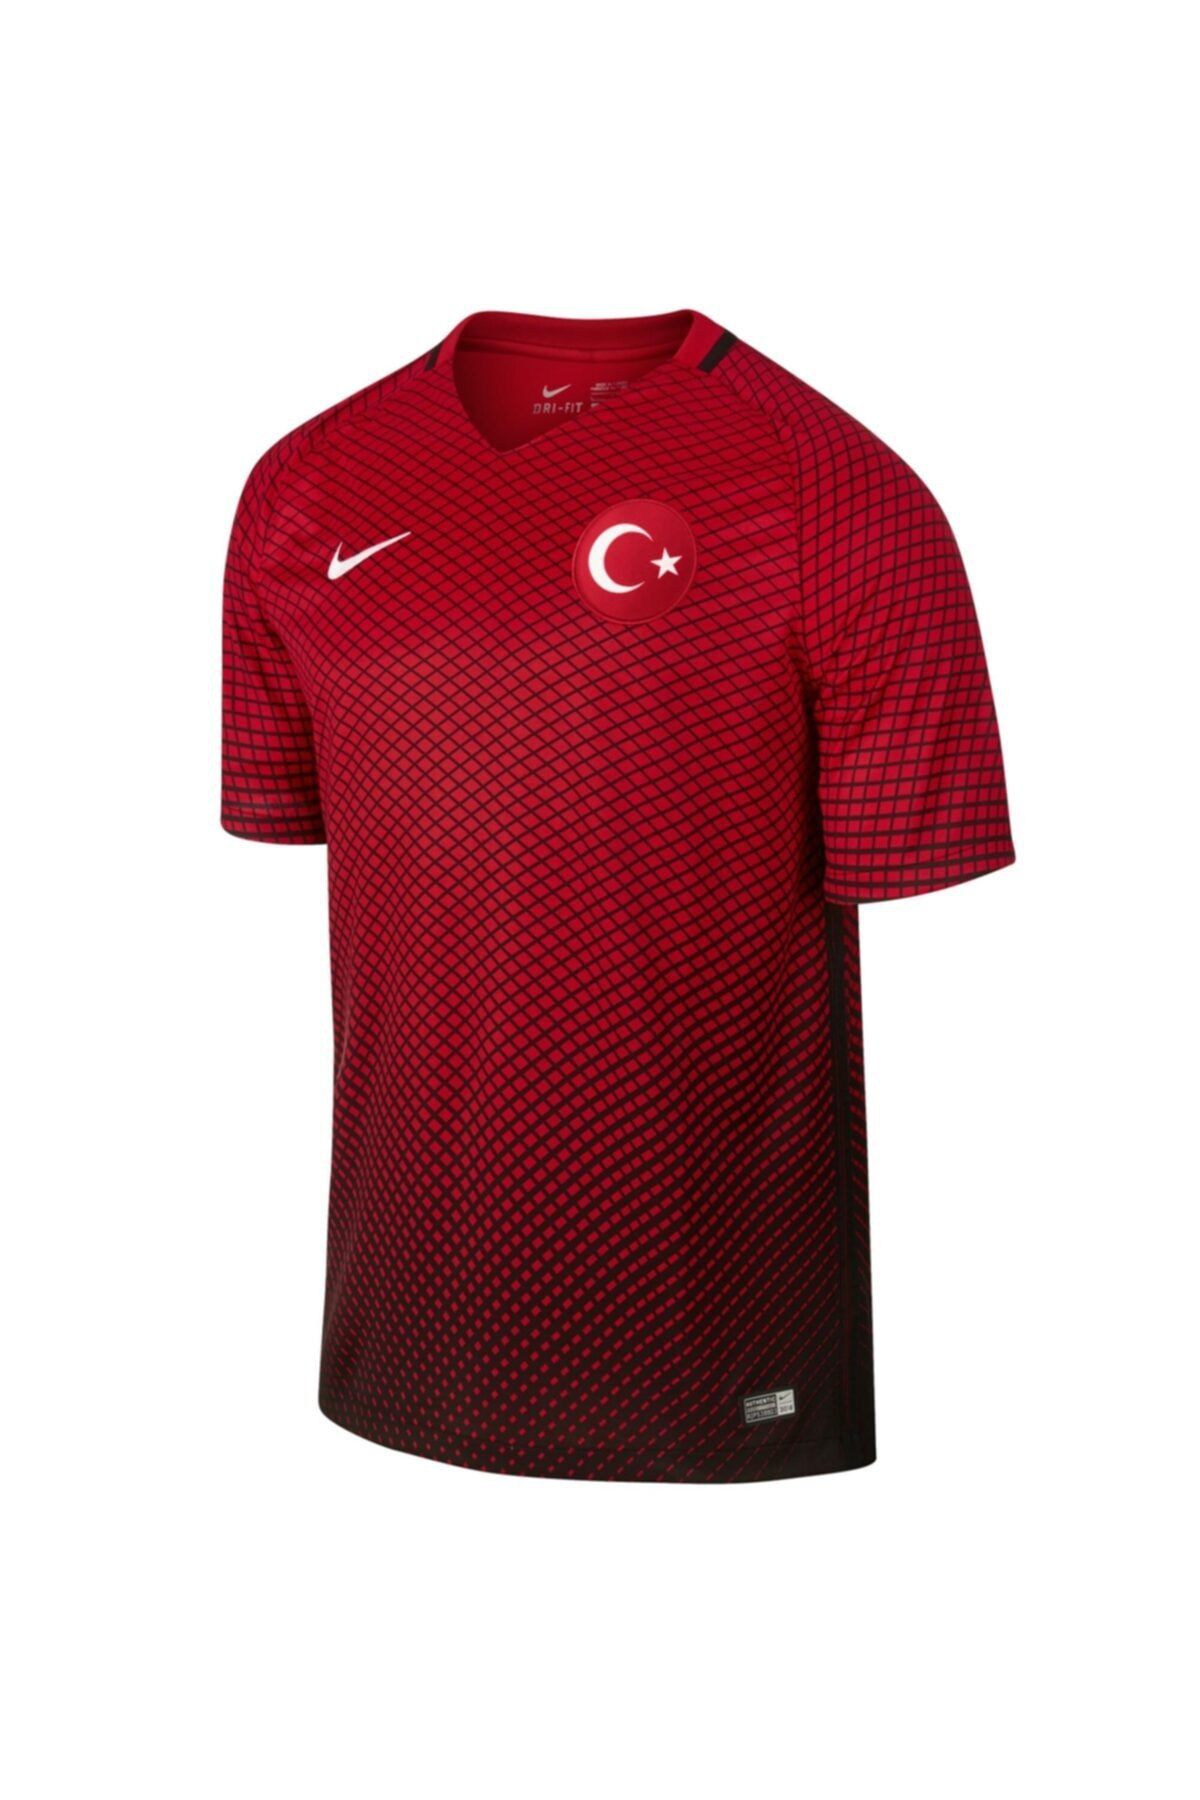 Türkiye Imzalı Milli Takım Forması 724638-010 Kırmızı